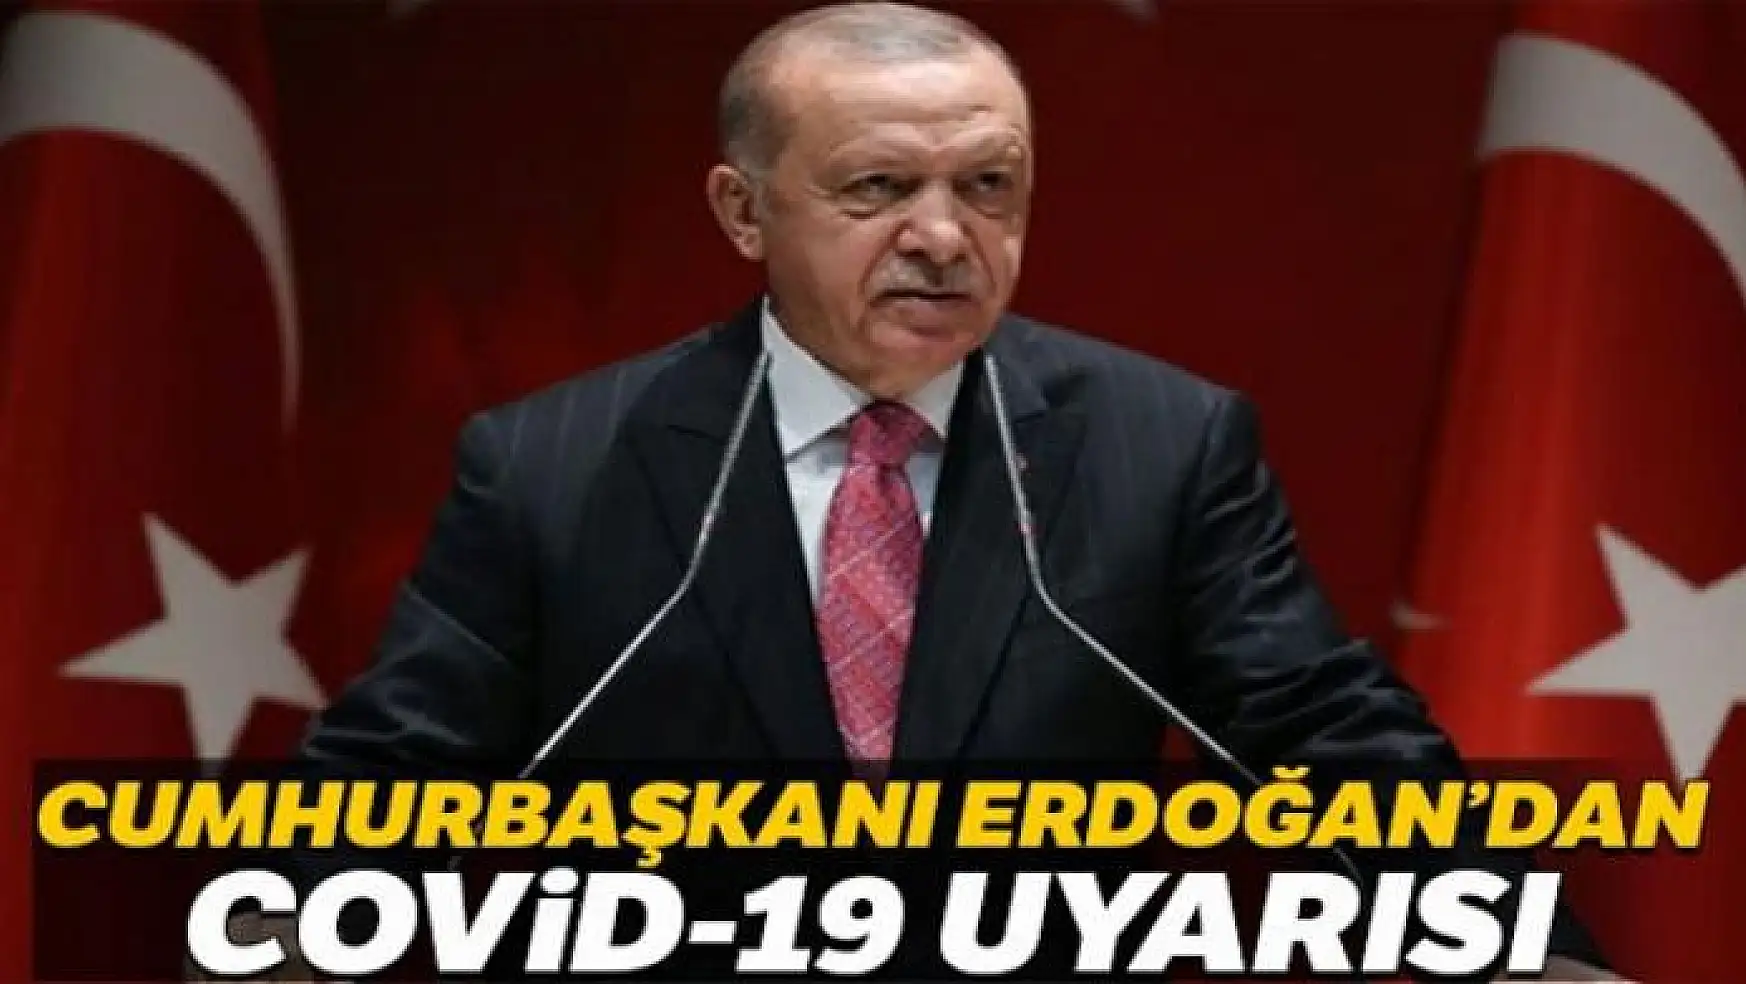 Cumhurbaşkanı Erdoğan'dan cuma namazında cemaate Covid-19 uyarısı